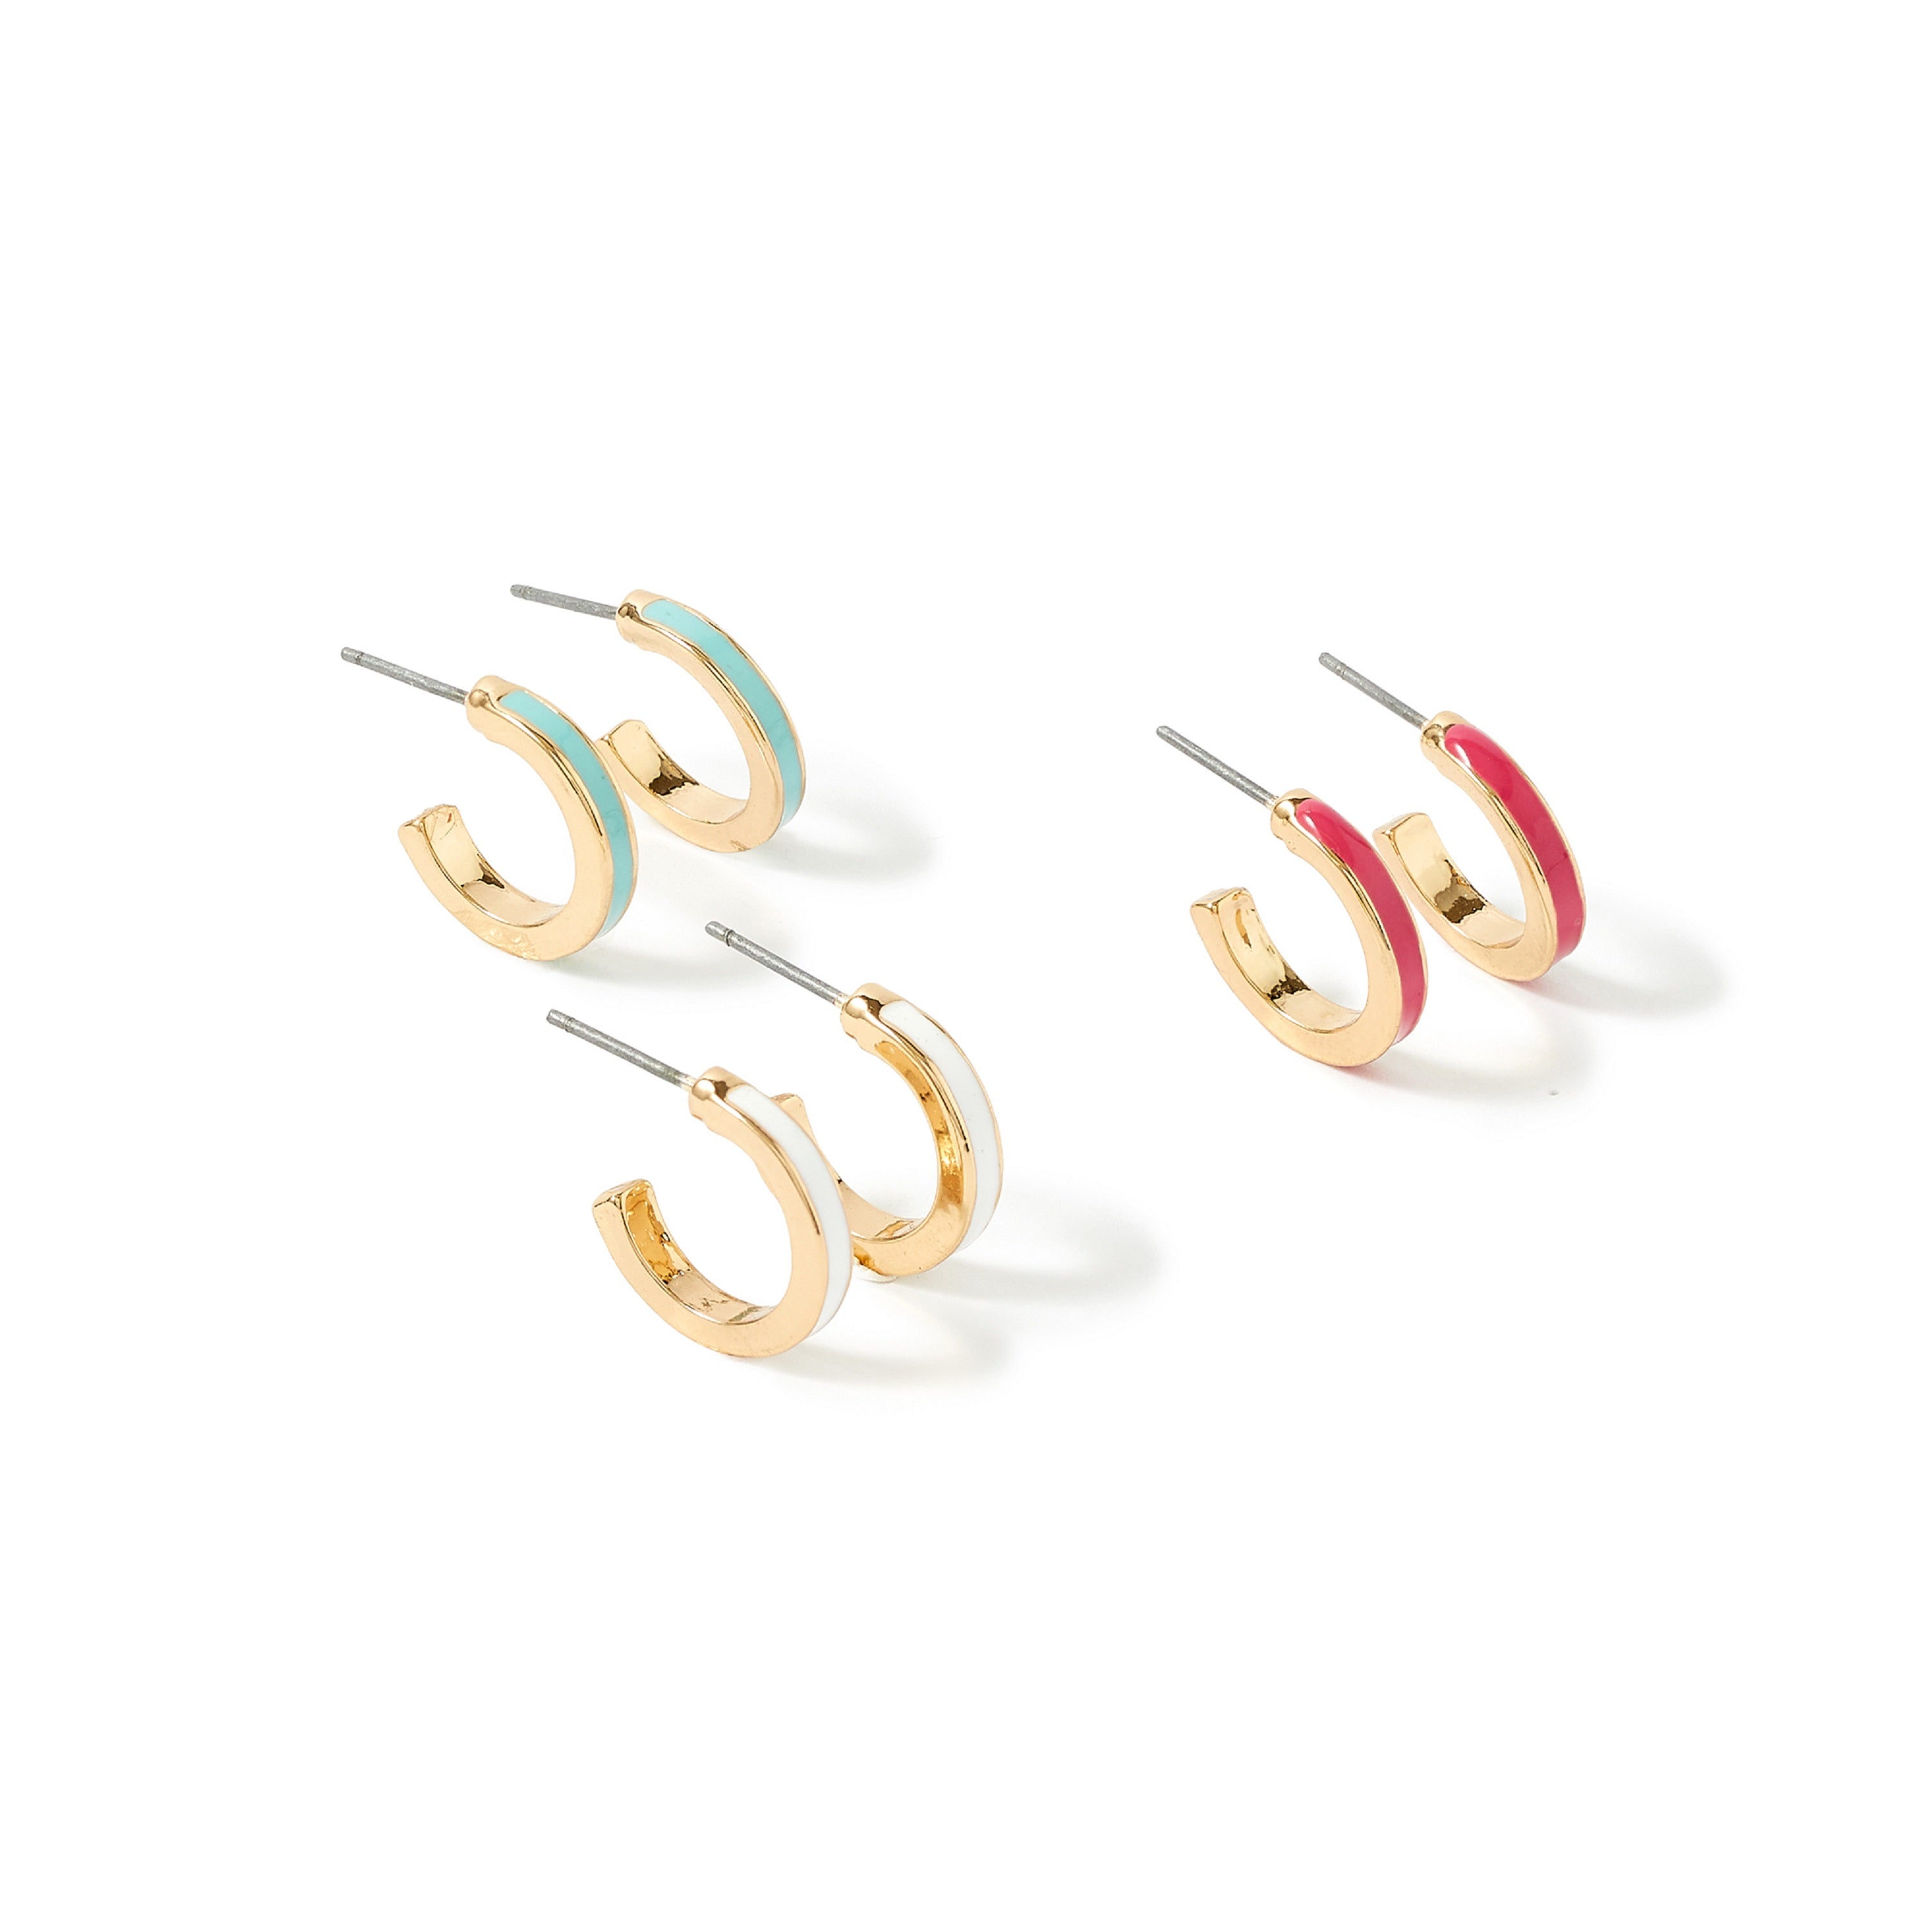 Accessorize London Women's Romantic Ramble set of 3 Enamel Hoop Earring Pack